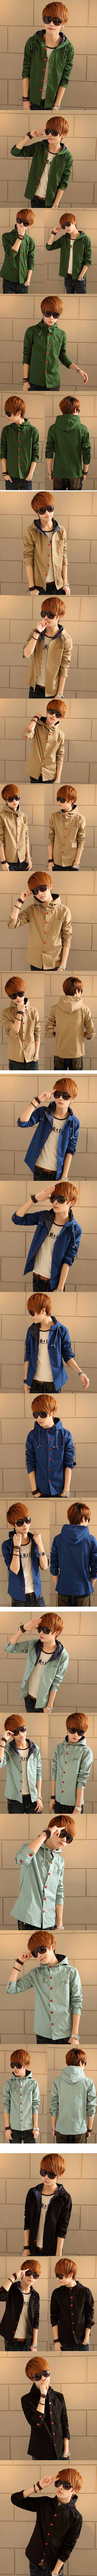 jual jaket pria model kasual import yang sedang trend di korea